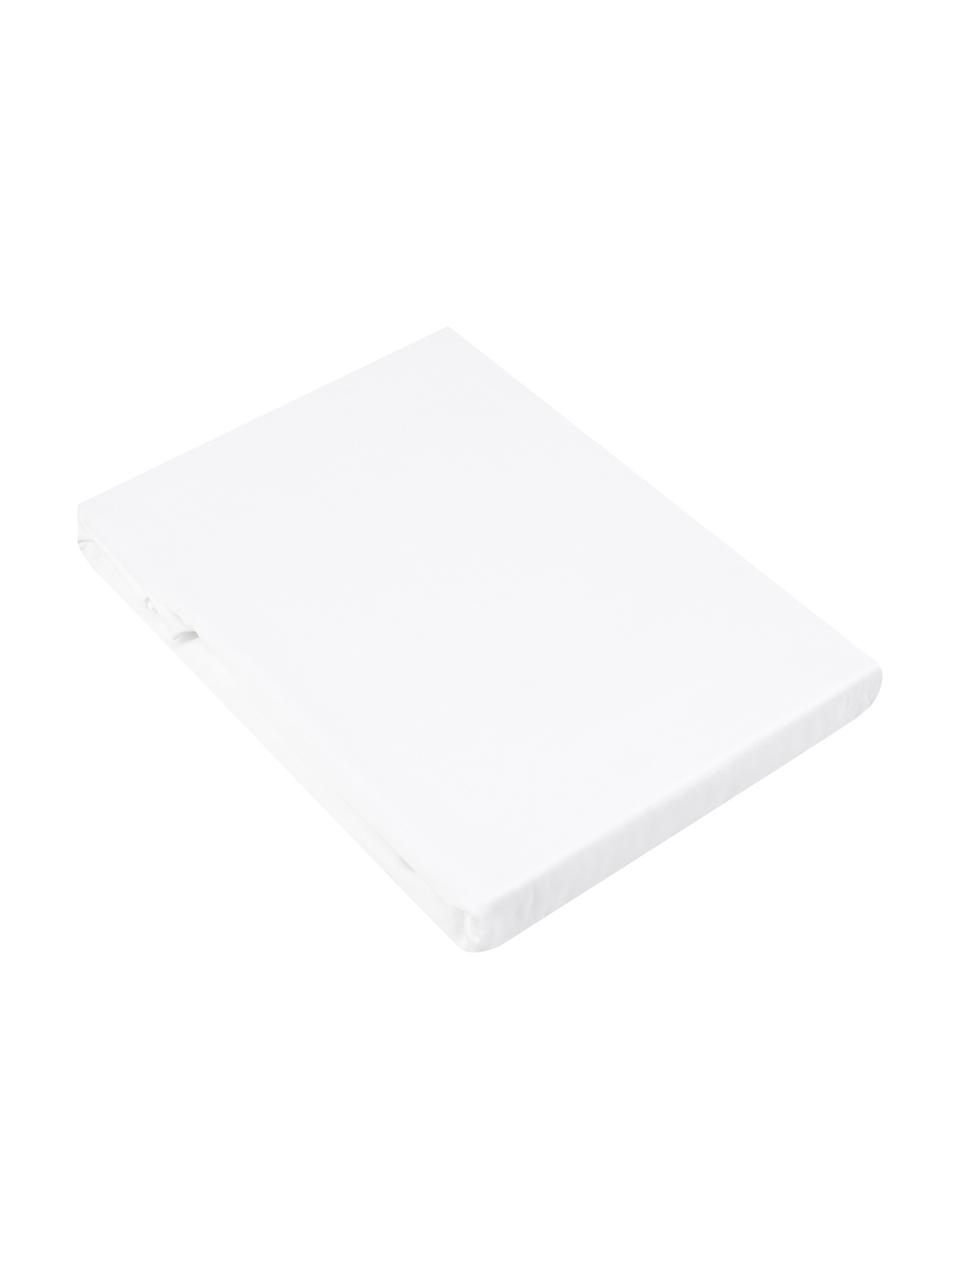 Boxspring-Spannbettlaken Comfort in Weiß, Baumwollsatin, Webart: Satin, Weiß, B 160 x L 200 cm